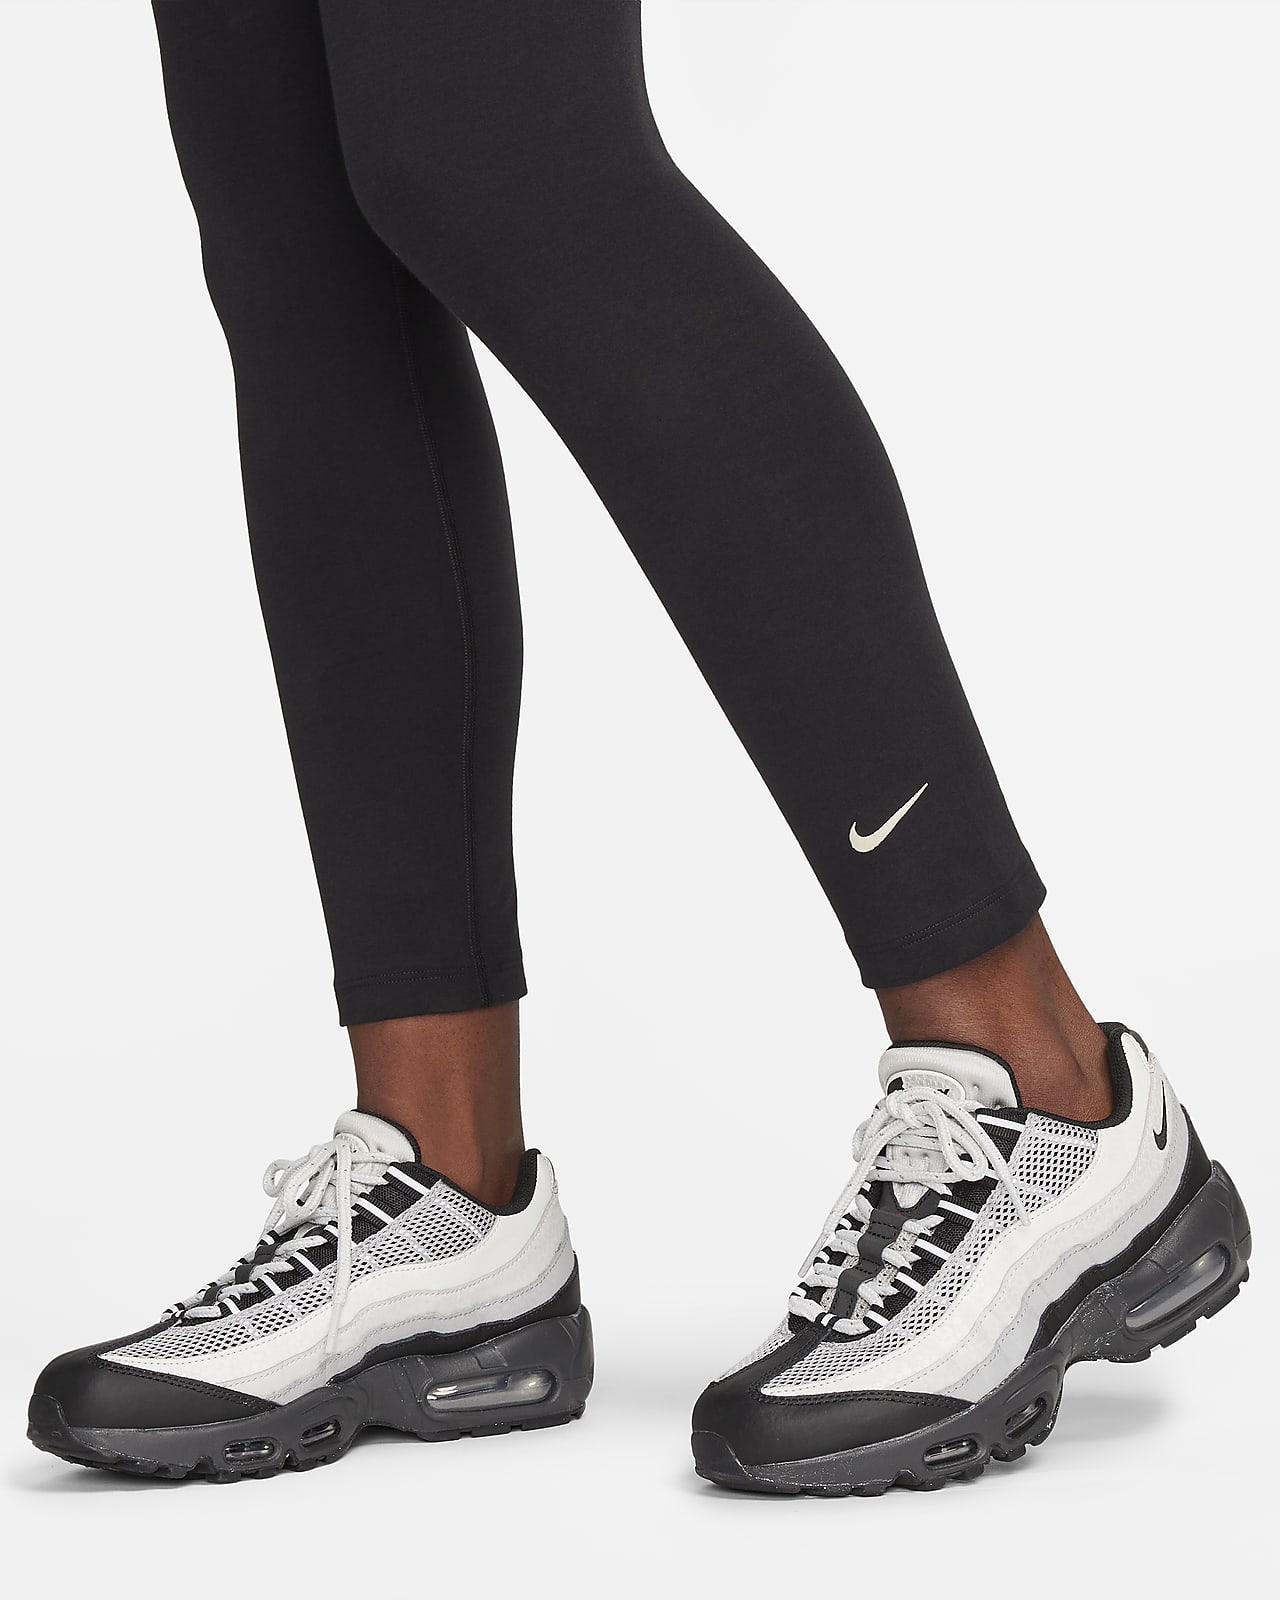 Nike Women's Leggings AIR DRI-FIT 7/8 Tight, Black/White